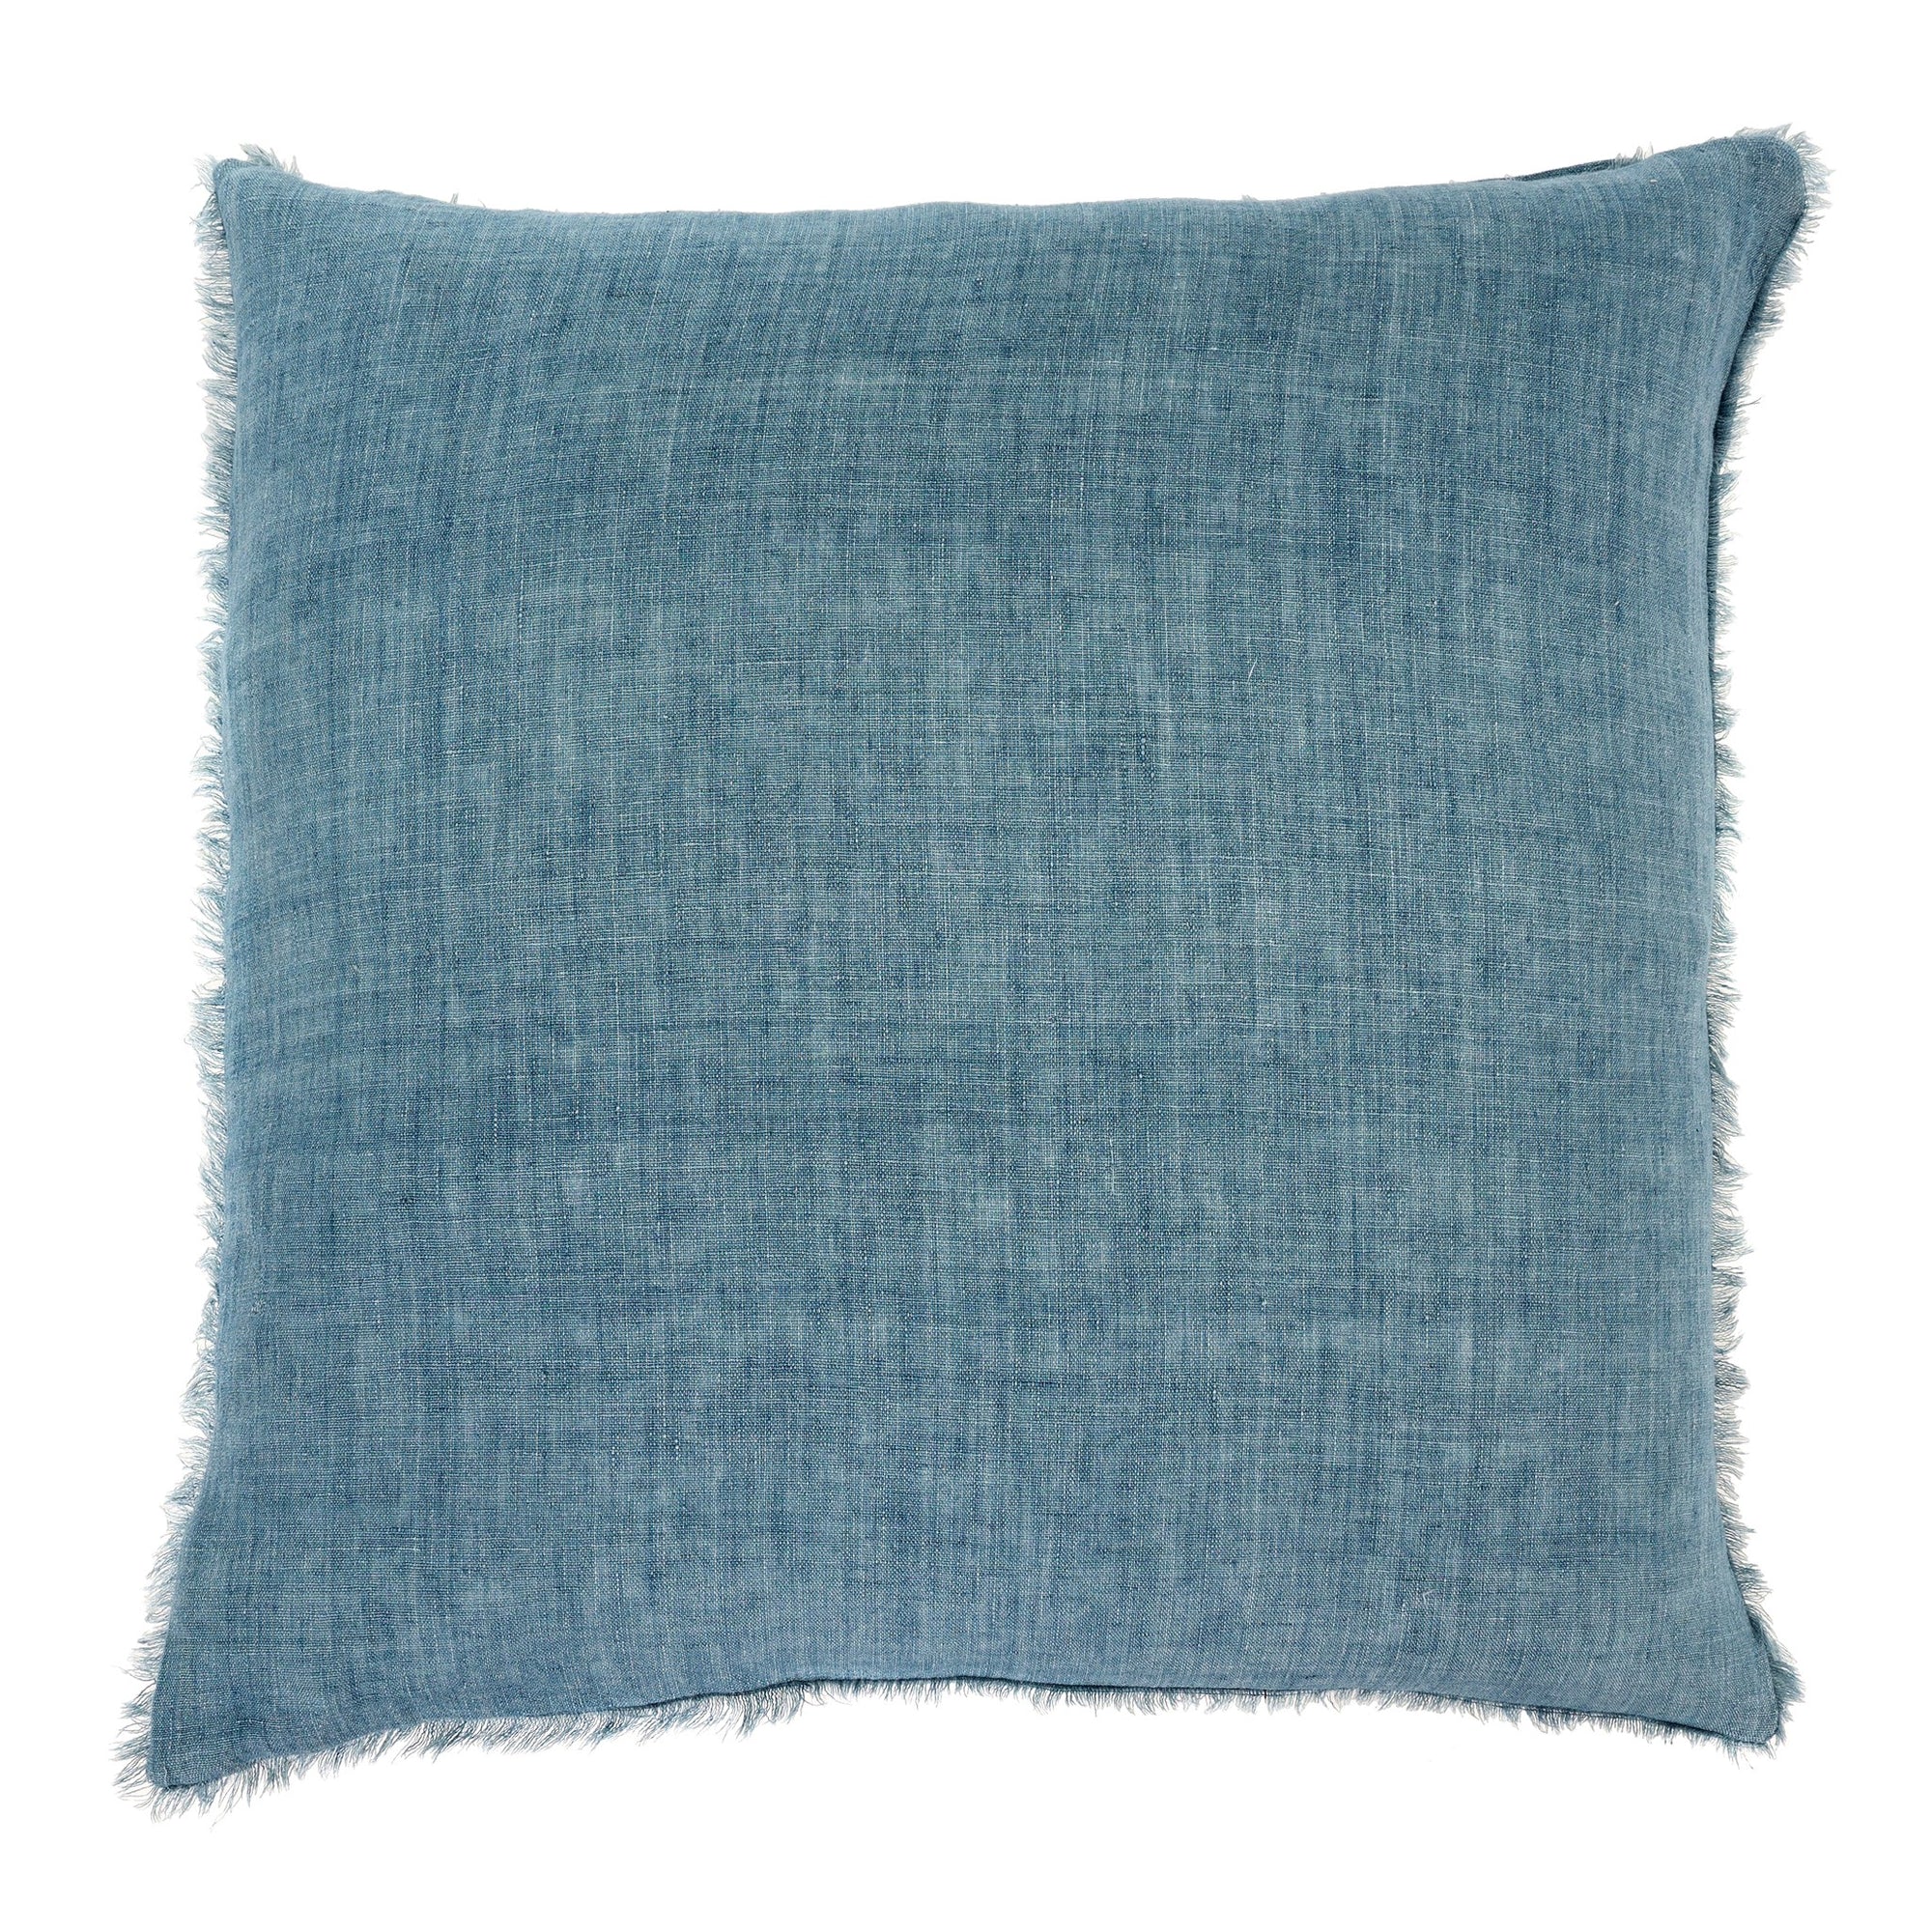 Lina Linen Pillow - Artic Blue